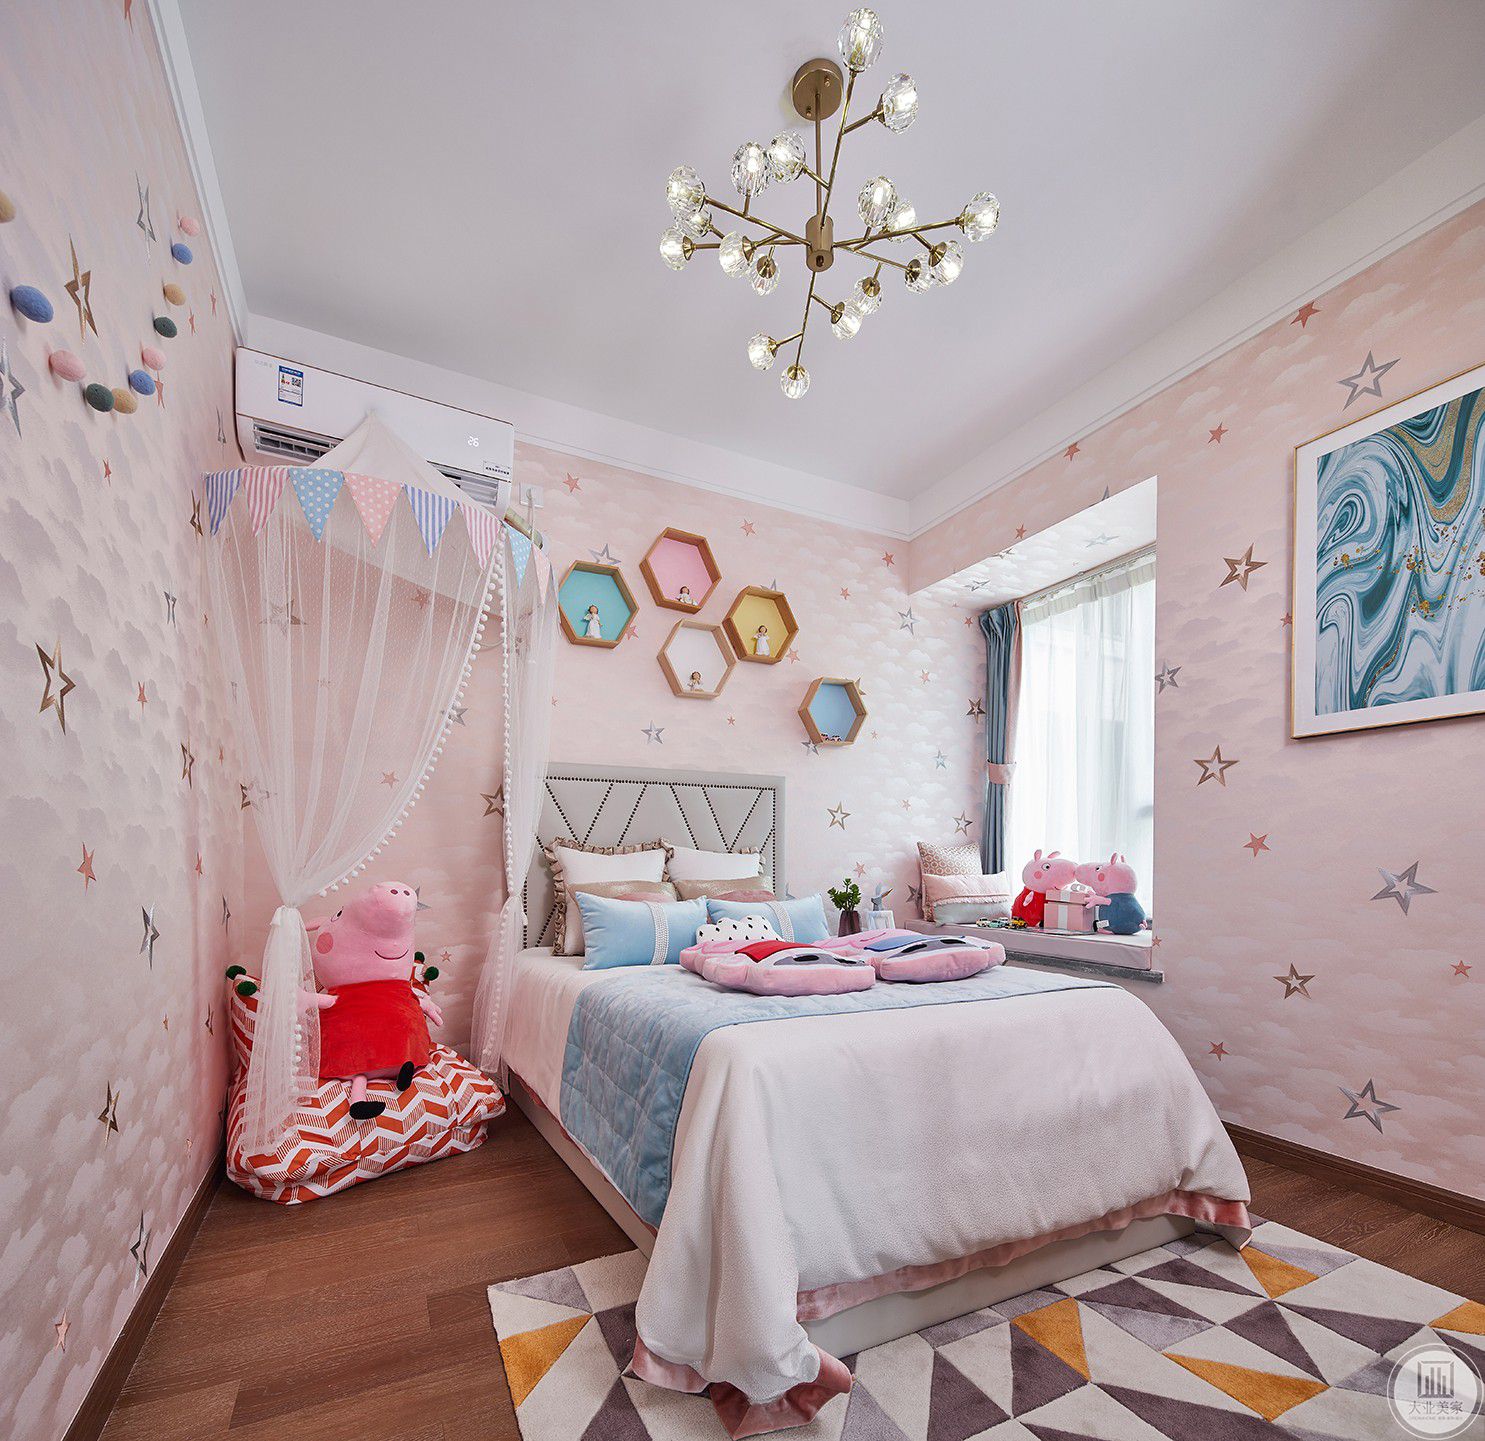 儿童房整个空间都以粉色为主，粉色的墙纸，粉色的床单，粉色的小猪佩琪，营造了浓浓的少女氛围。